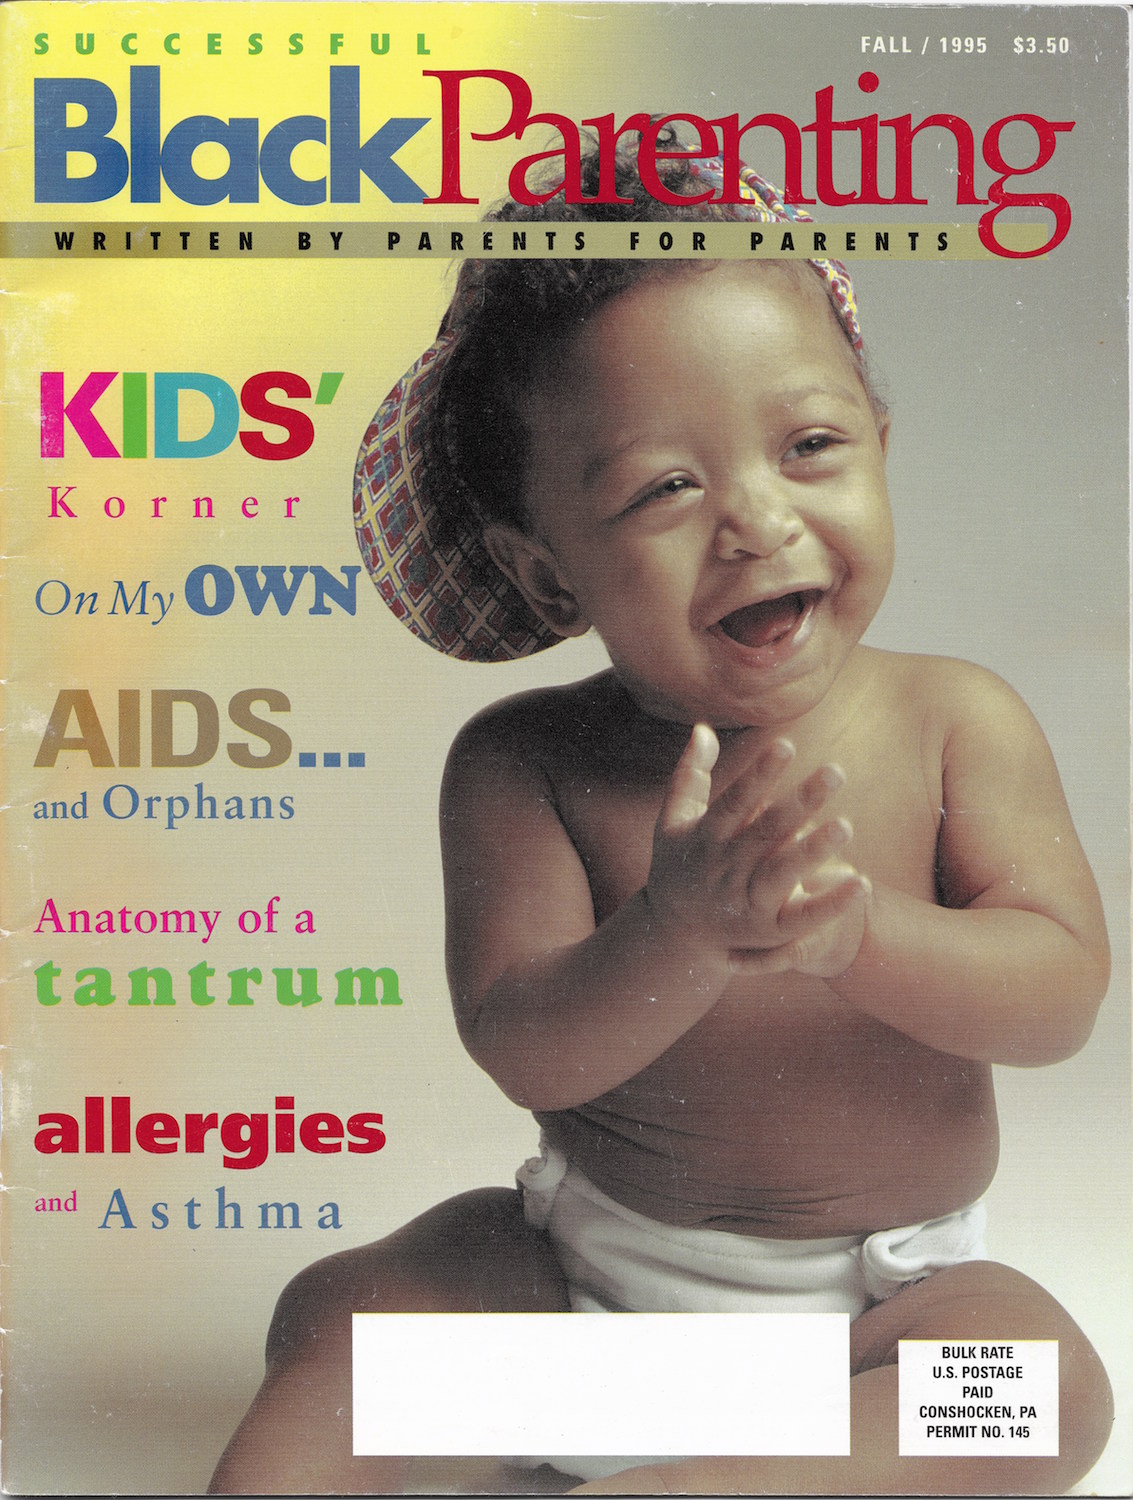 Successful black parenting 01 copy on successful black parenting magazine